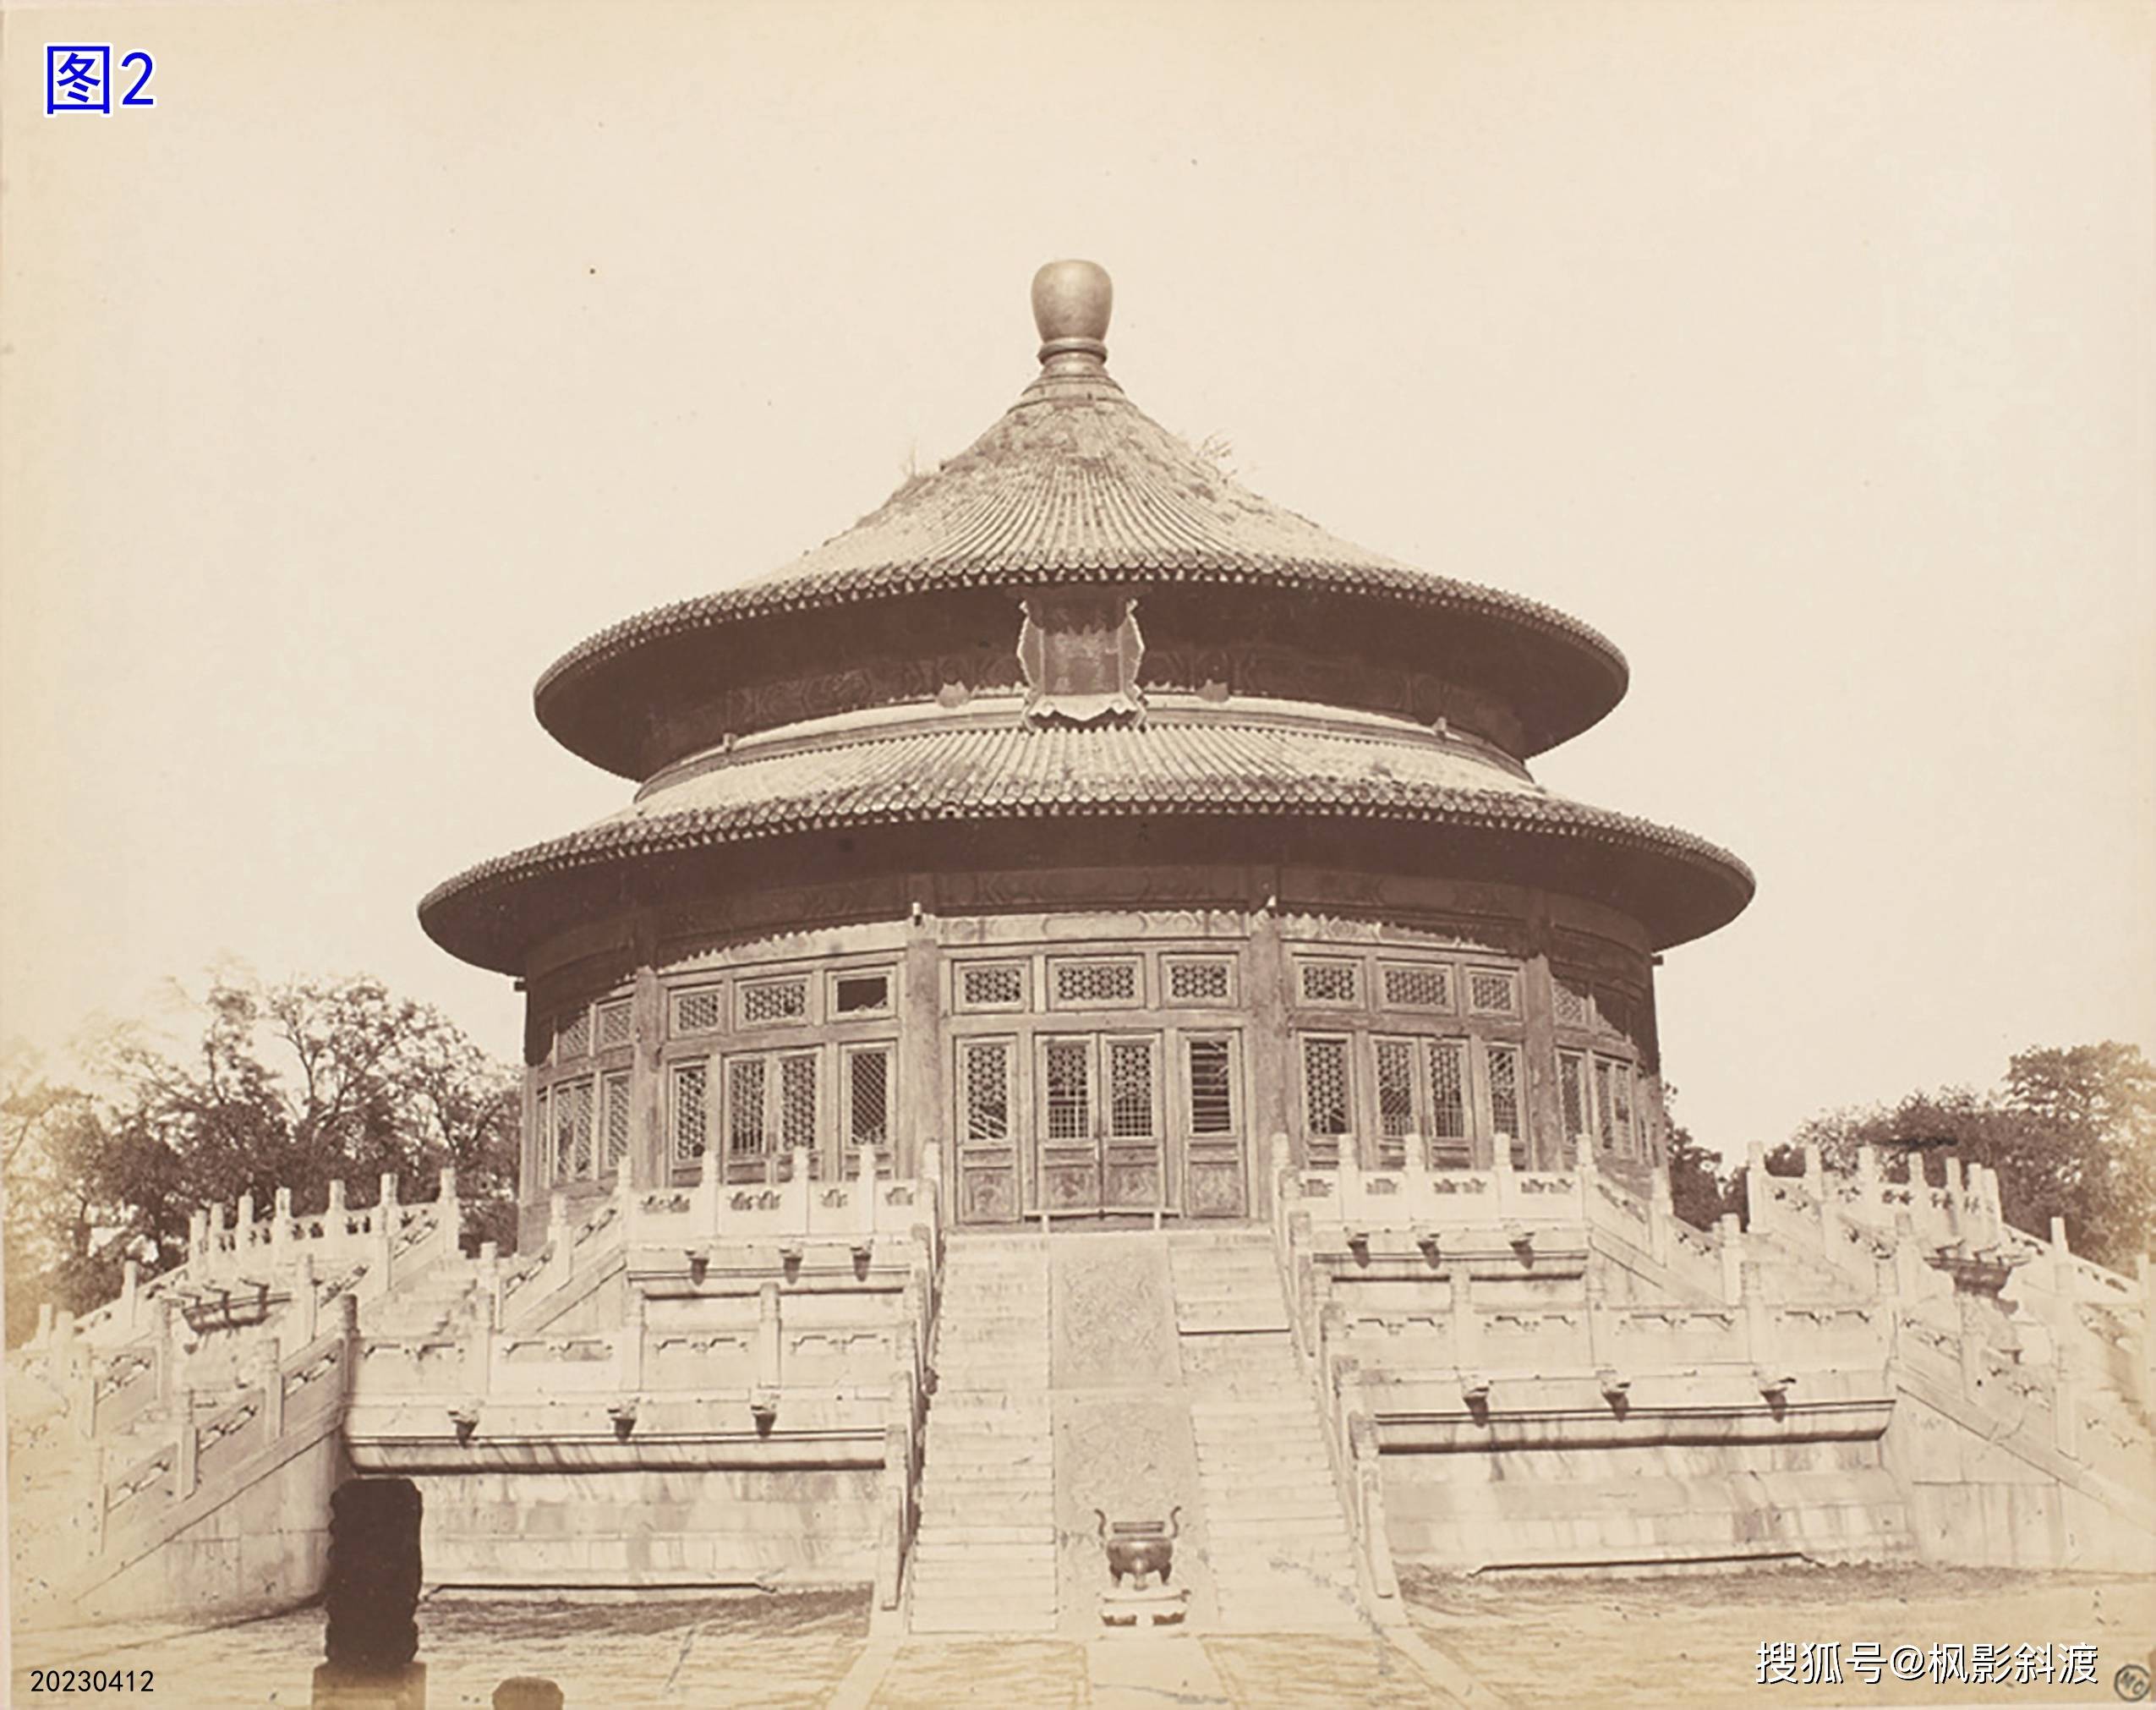 富士苹果竖版照片:北京皇城大光明殿殿名匾上文字的变化-第2张图片-太平洋在线下载